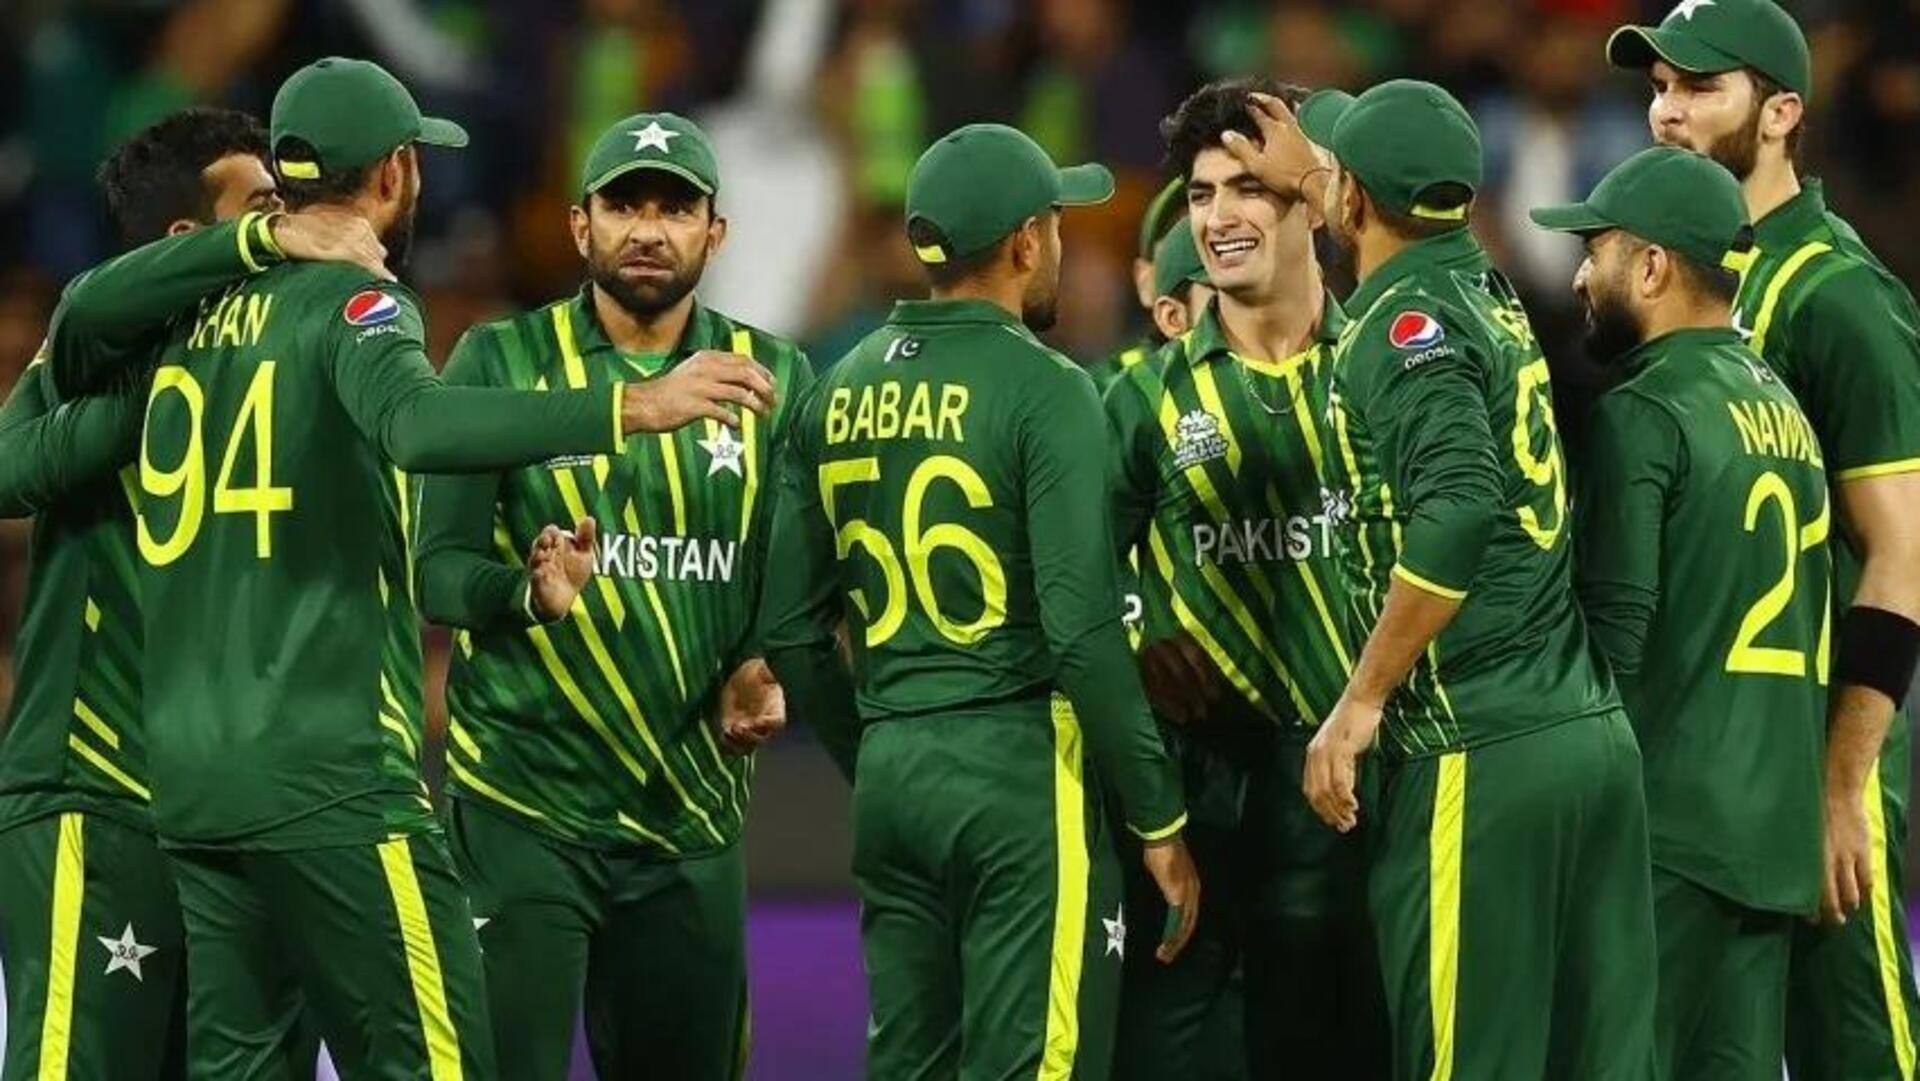 विश्व कप खेलने भारत आएगी पाकिस्तान की टीम, सरकार से मिली हरी झंडी 